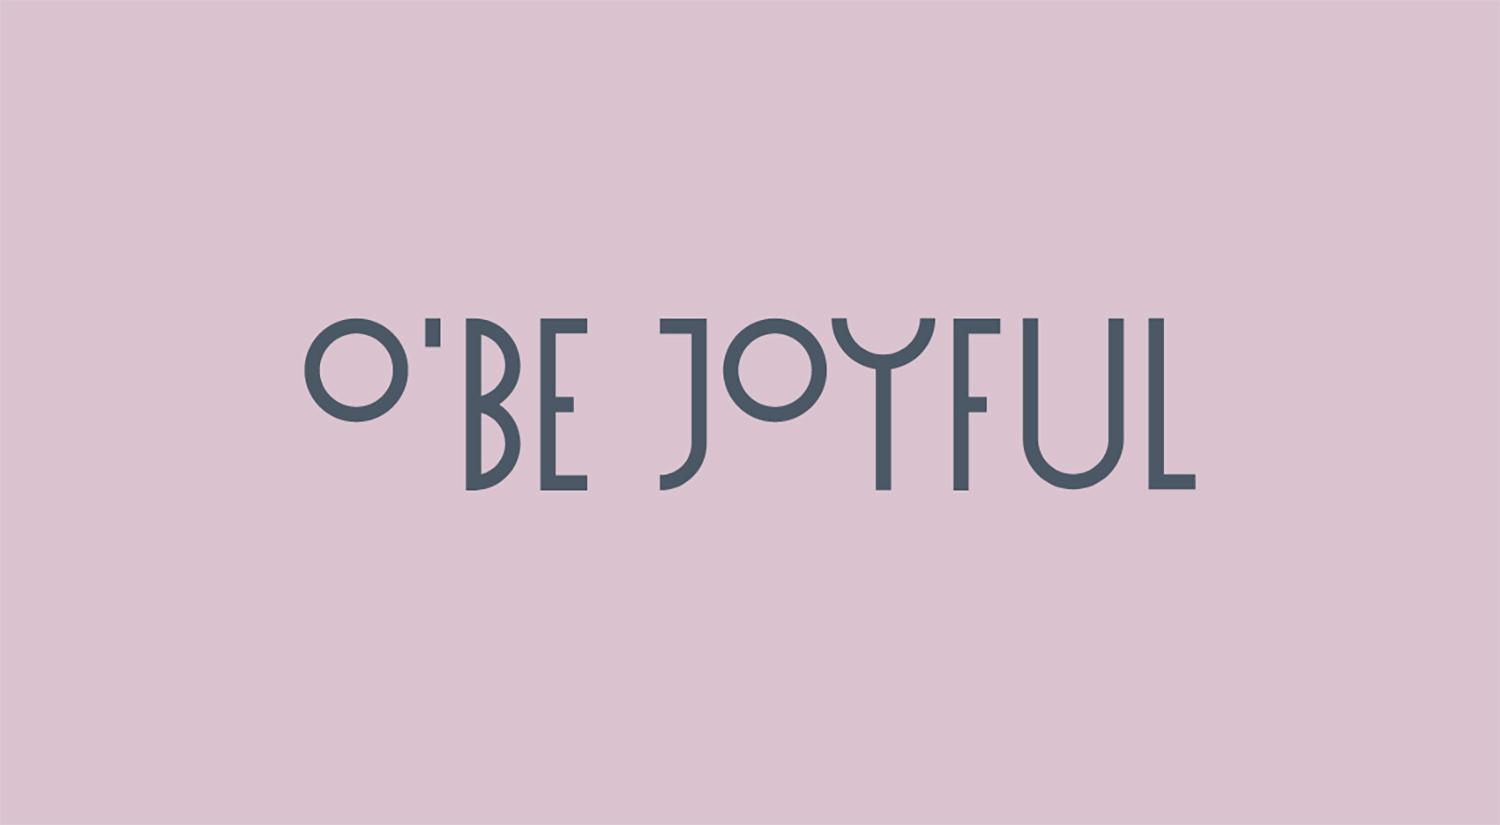 o’-be-joyful-logo-3